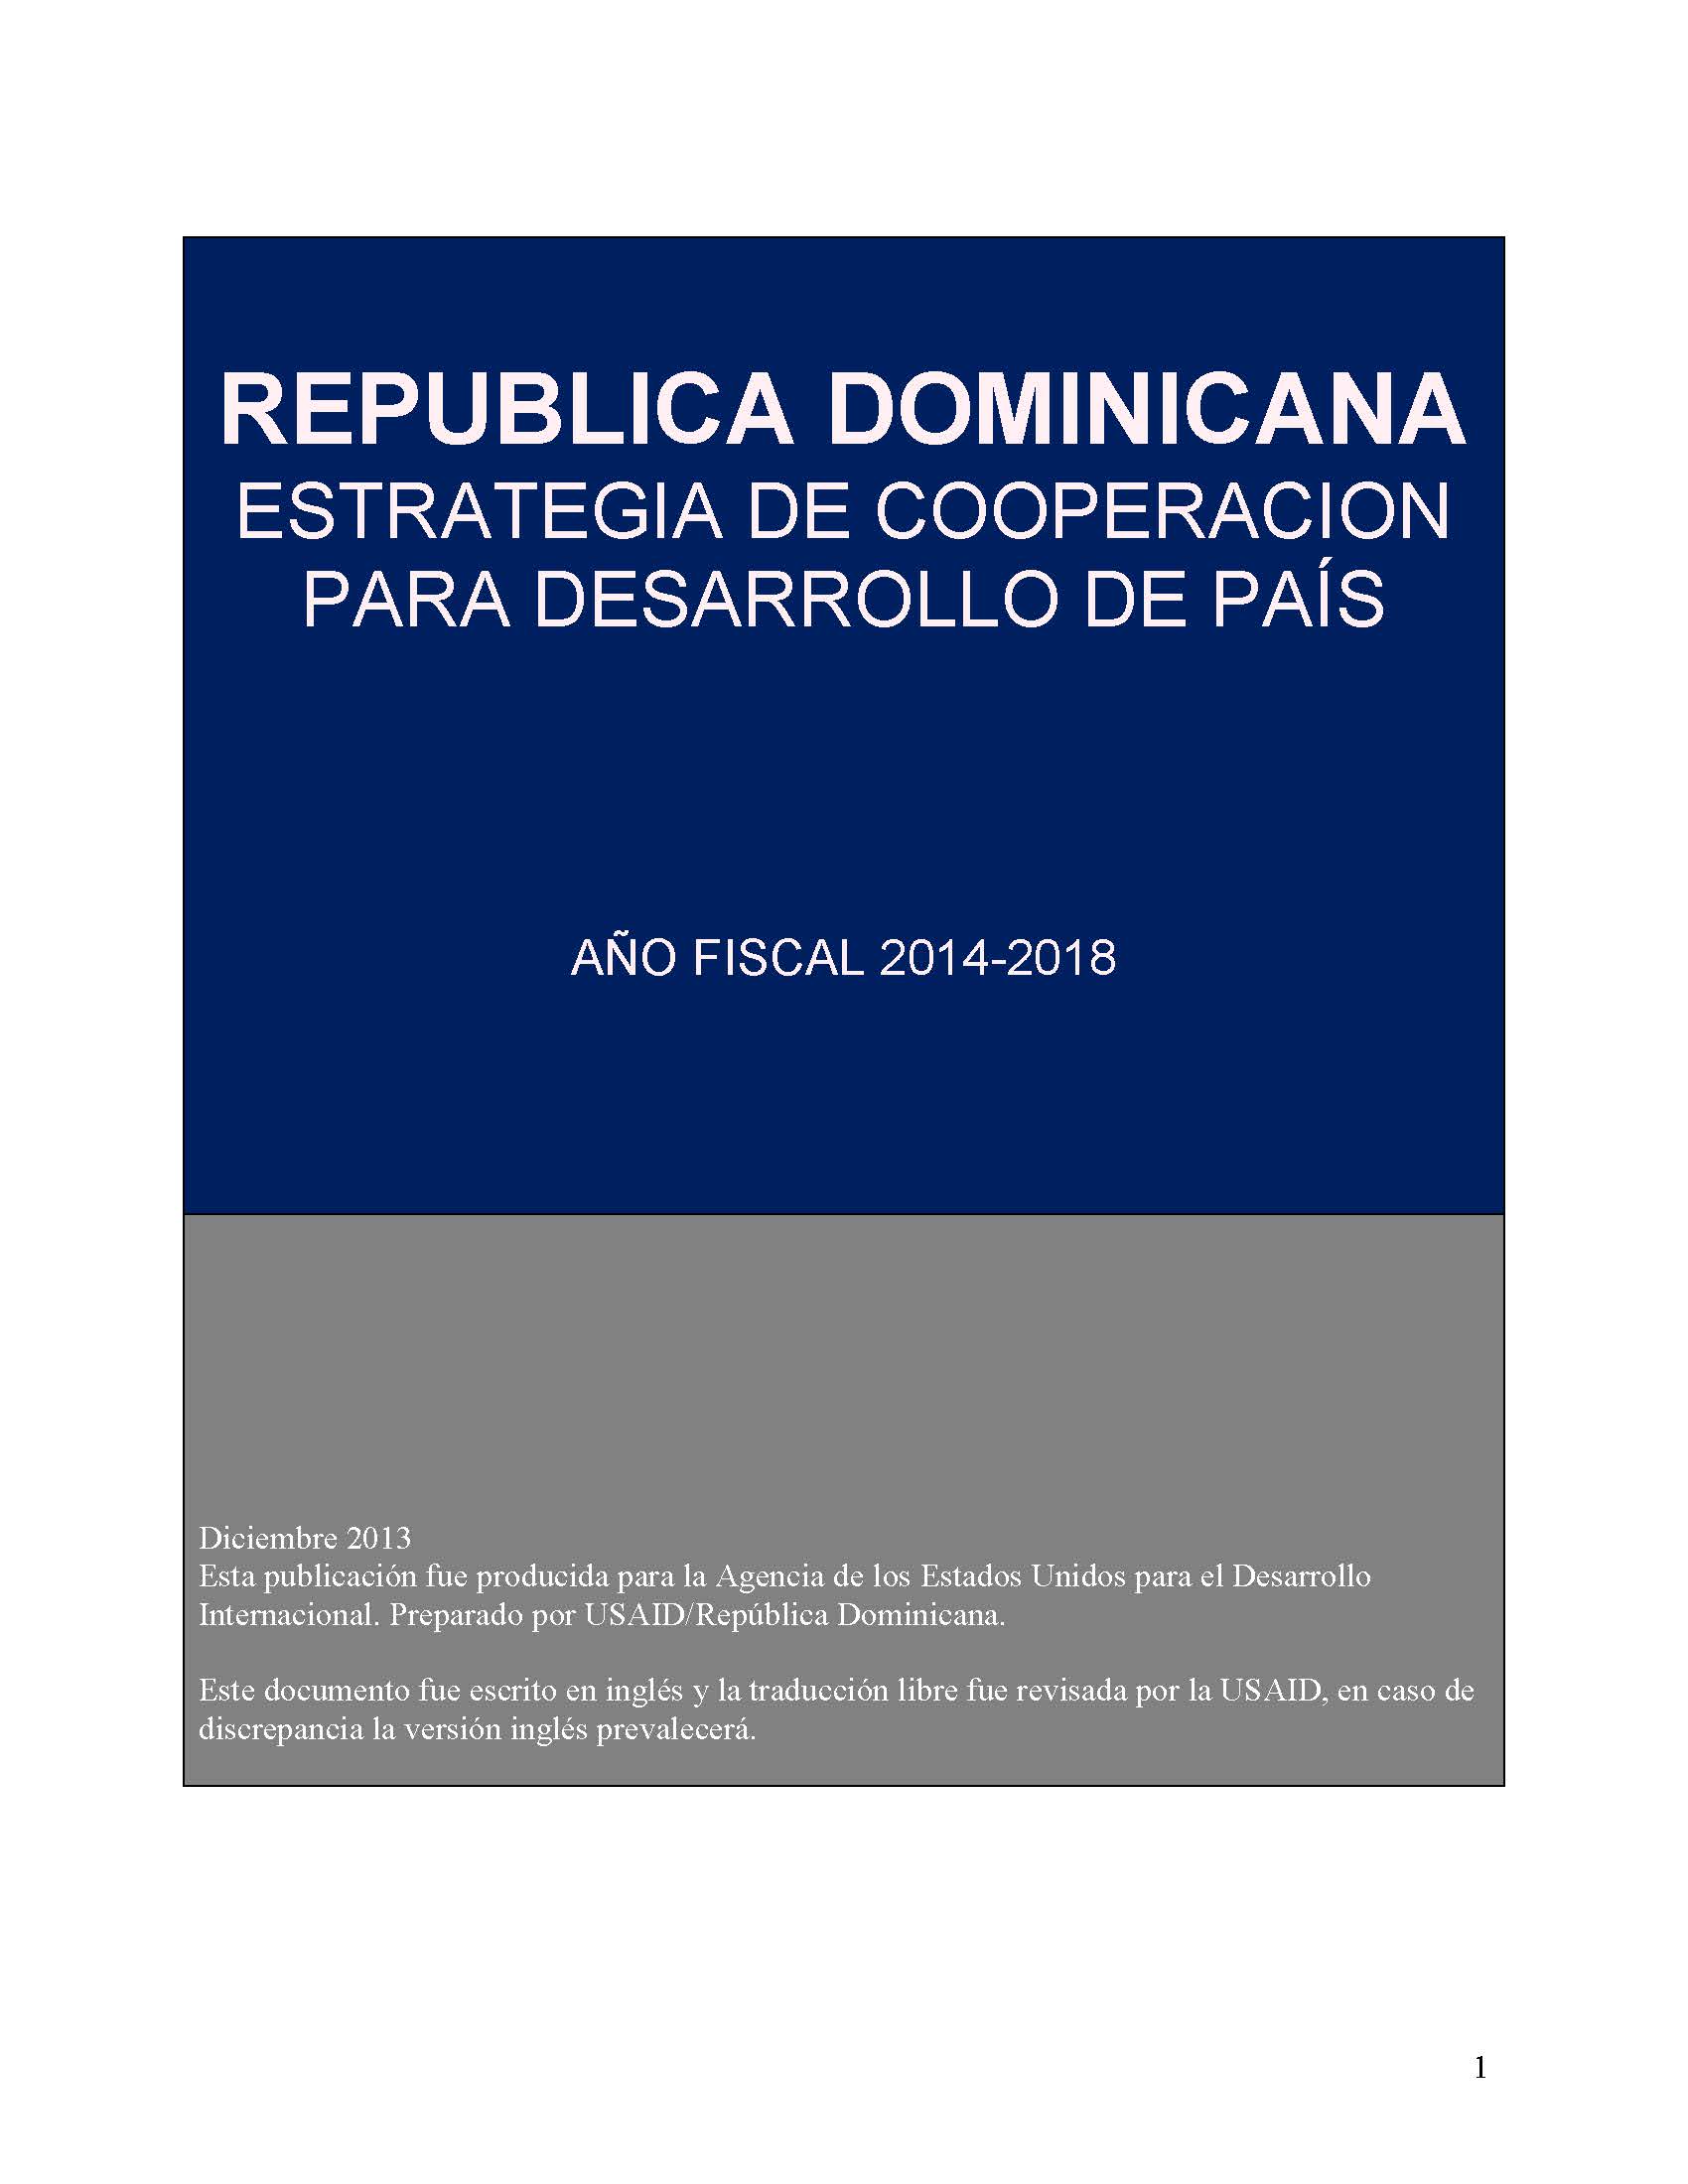 Estrategia de Desarrollo y Cooperación de la USAID/República Dominicana